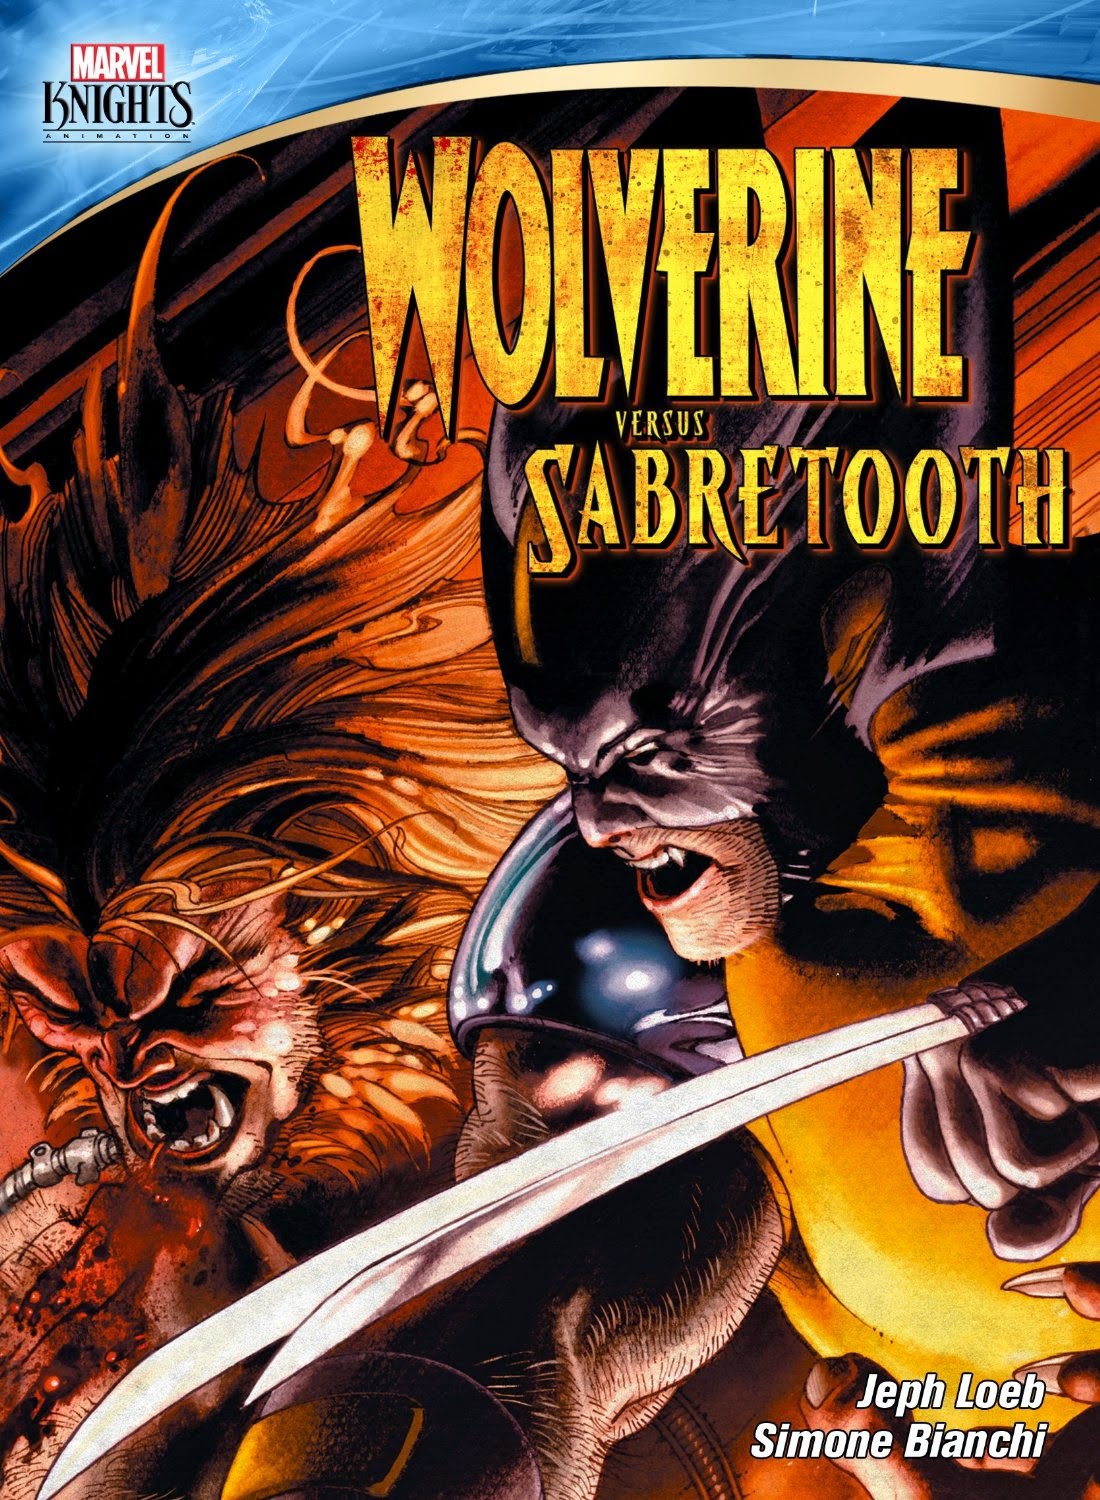 http://superheroesrevelados.blogspot.com.ar/2014/11/wolverine-vs-sabretooth.html